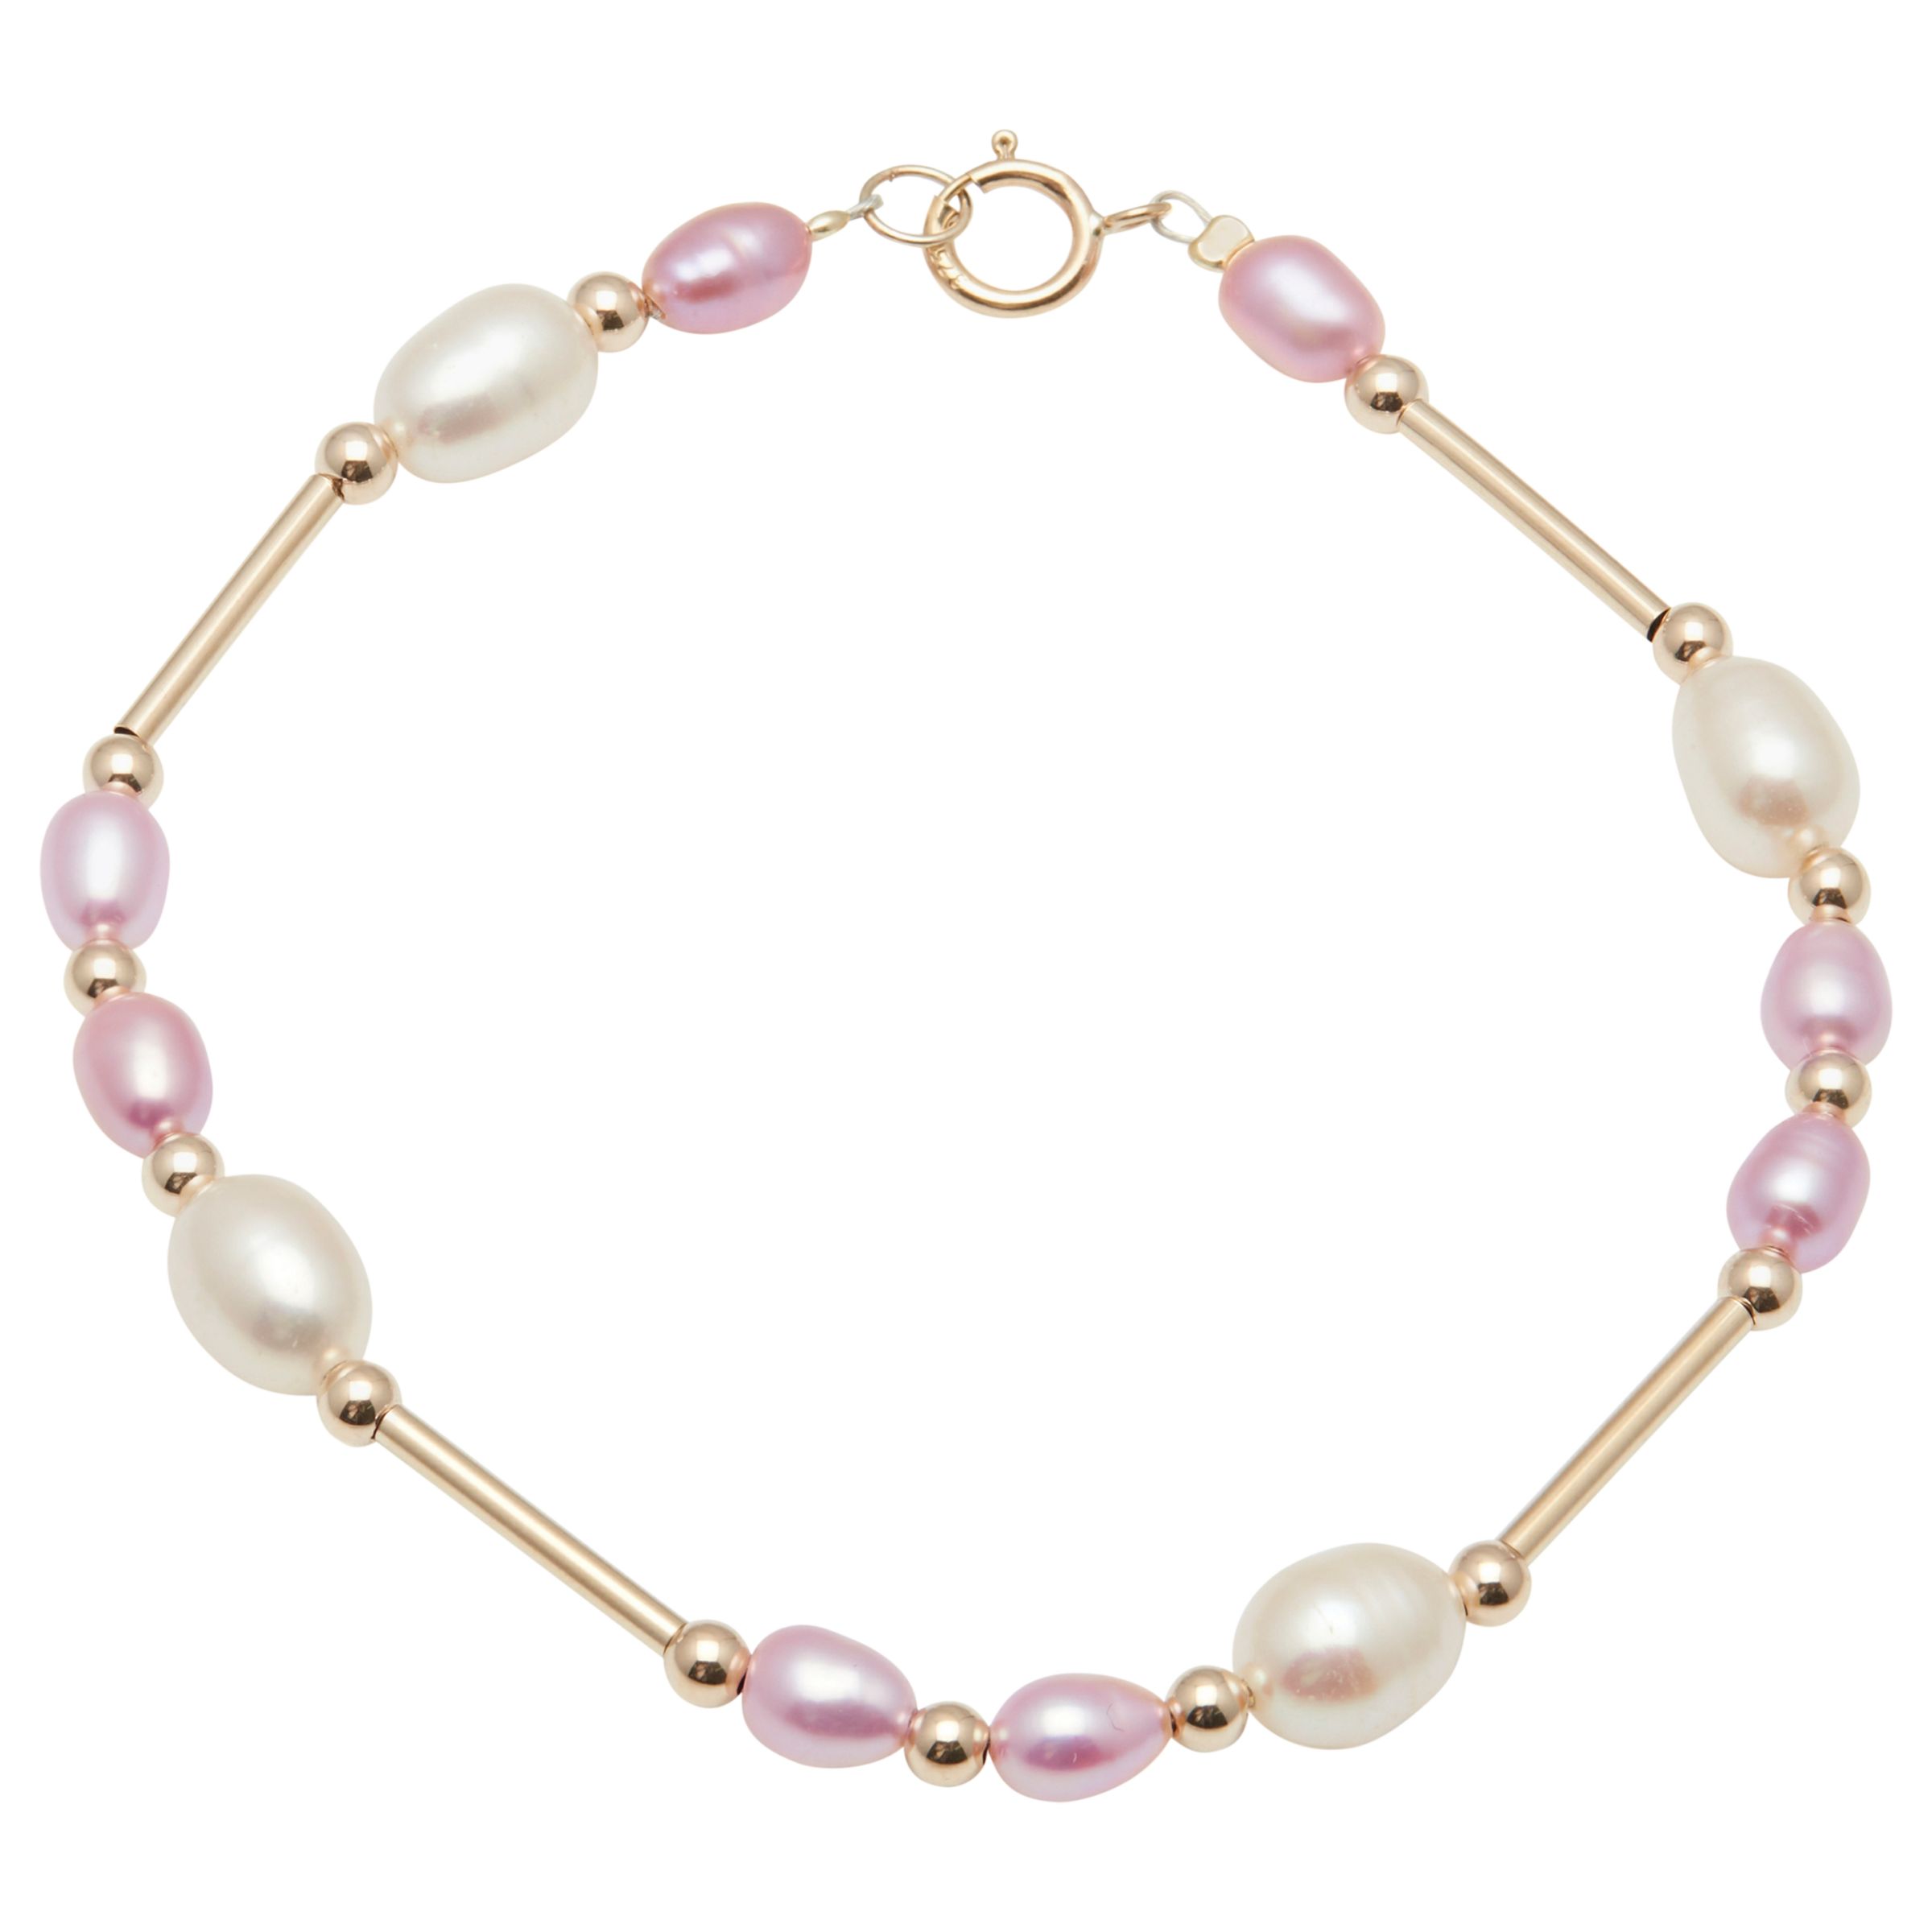 A B Davis 9ct Gold Freshwater Pearl Bar Bracelet, Pink/White